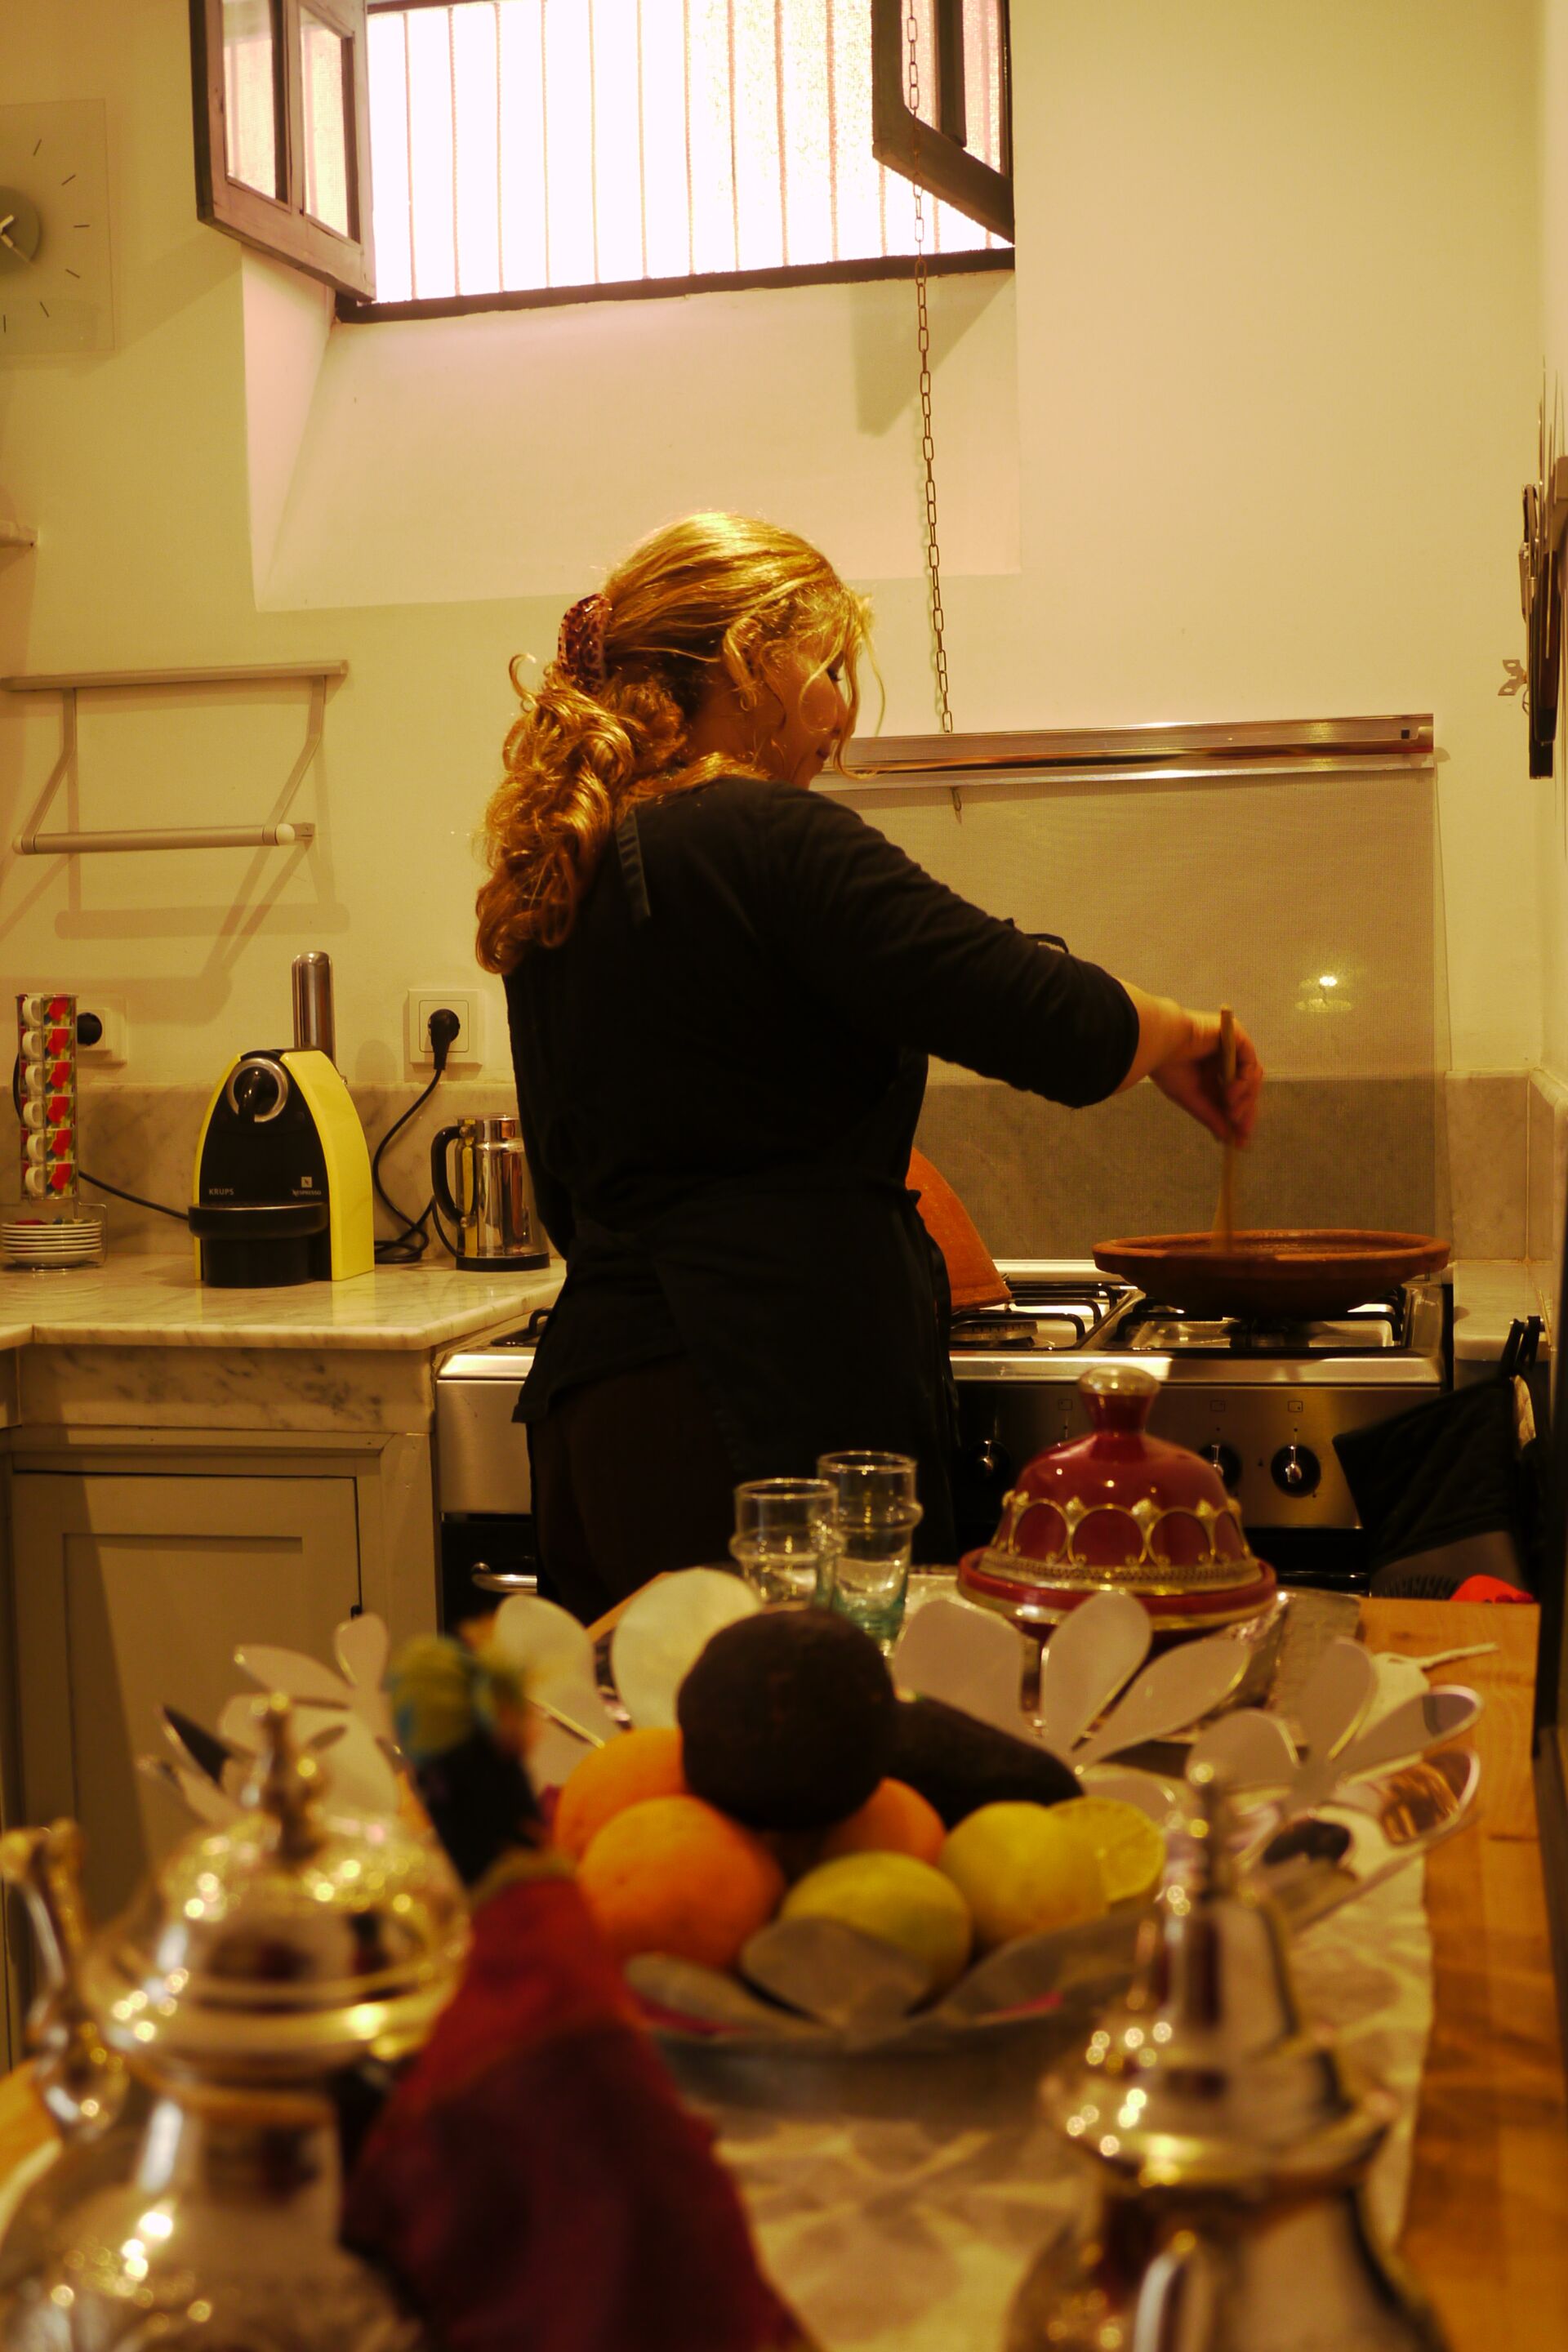 Hausmädchen & Köchin in der Unterkunft in Marrakesch